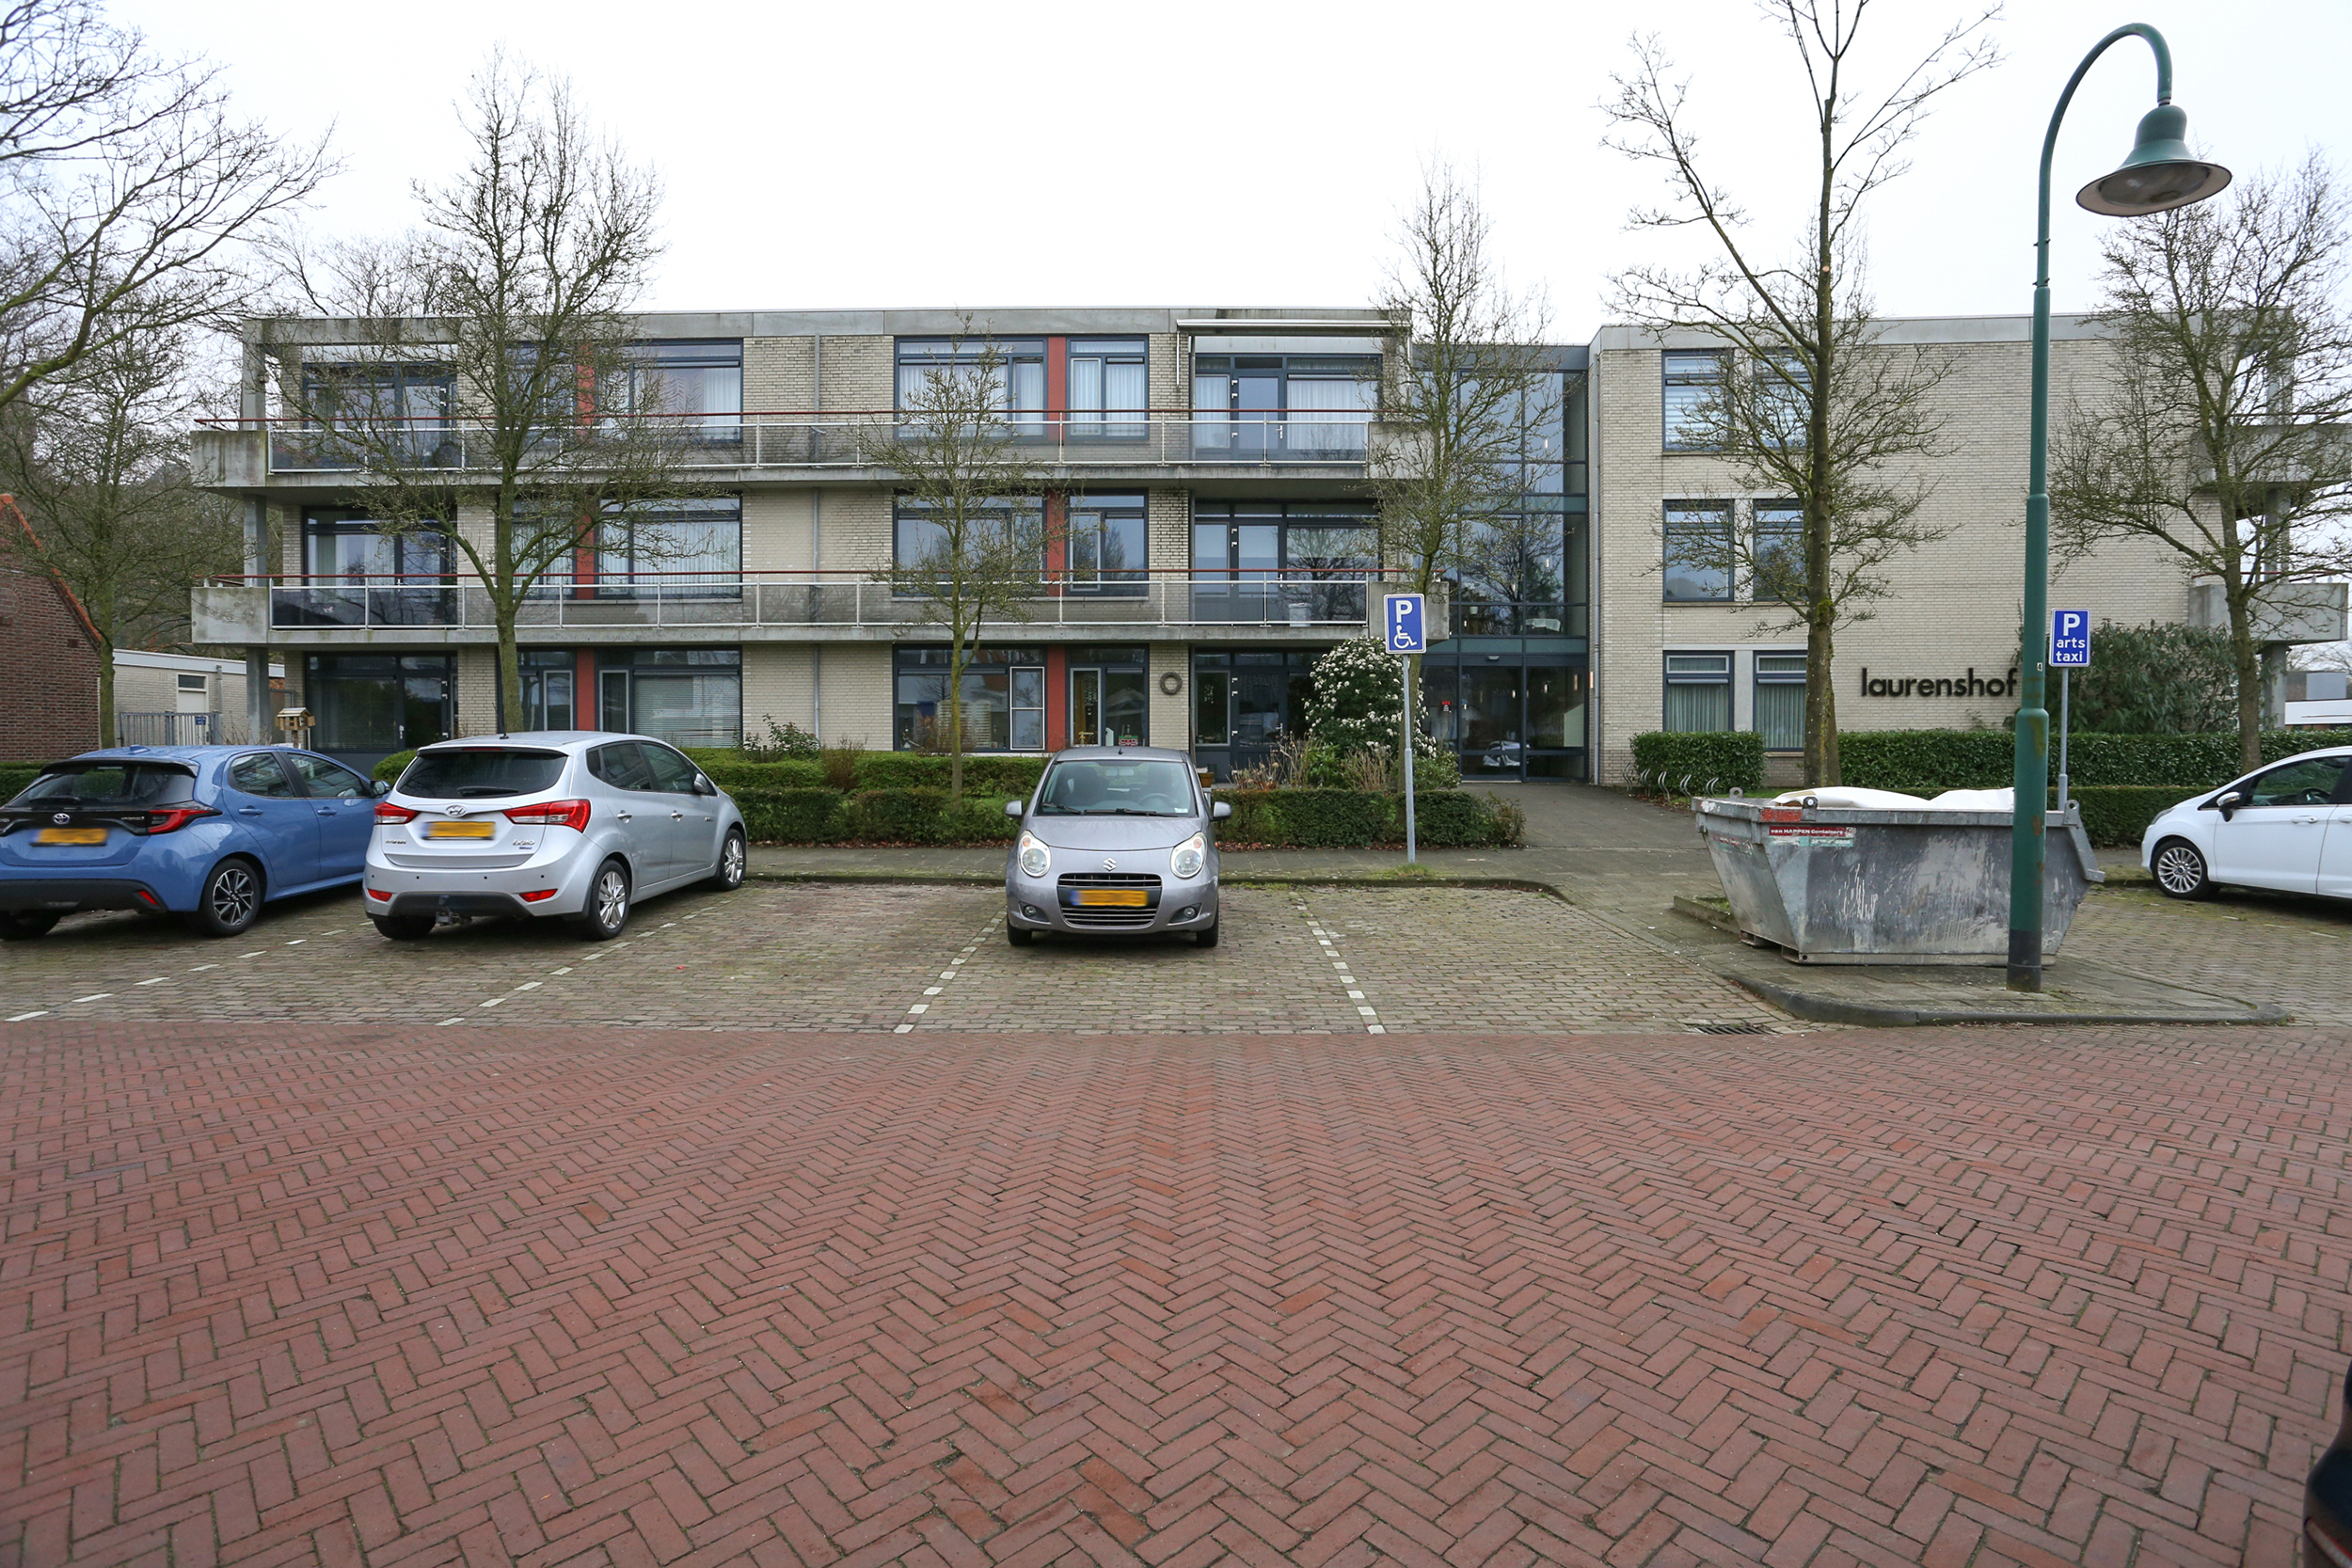 Laurentiusstraat 7, 4851 EL Ulvenhout, Nederland